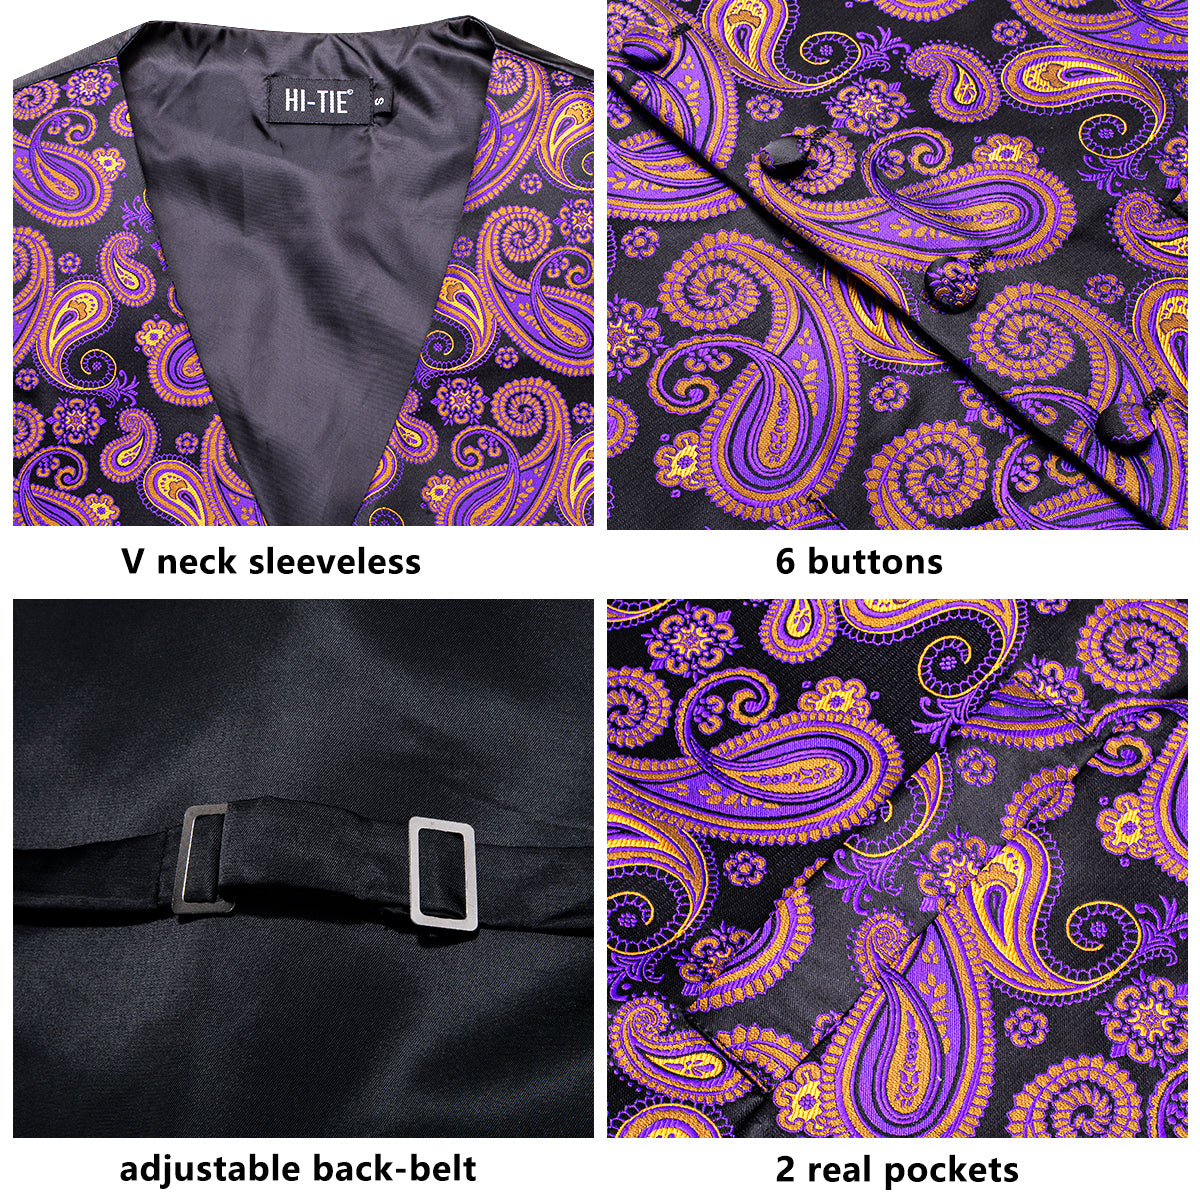 New Black Purple Yellow Paisley Silk Men's Vest Hanky Cufflinks Tie Set Waistcoat Suit Set